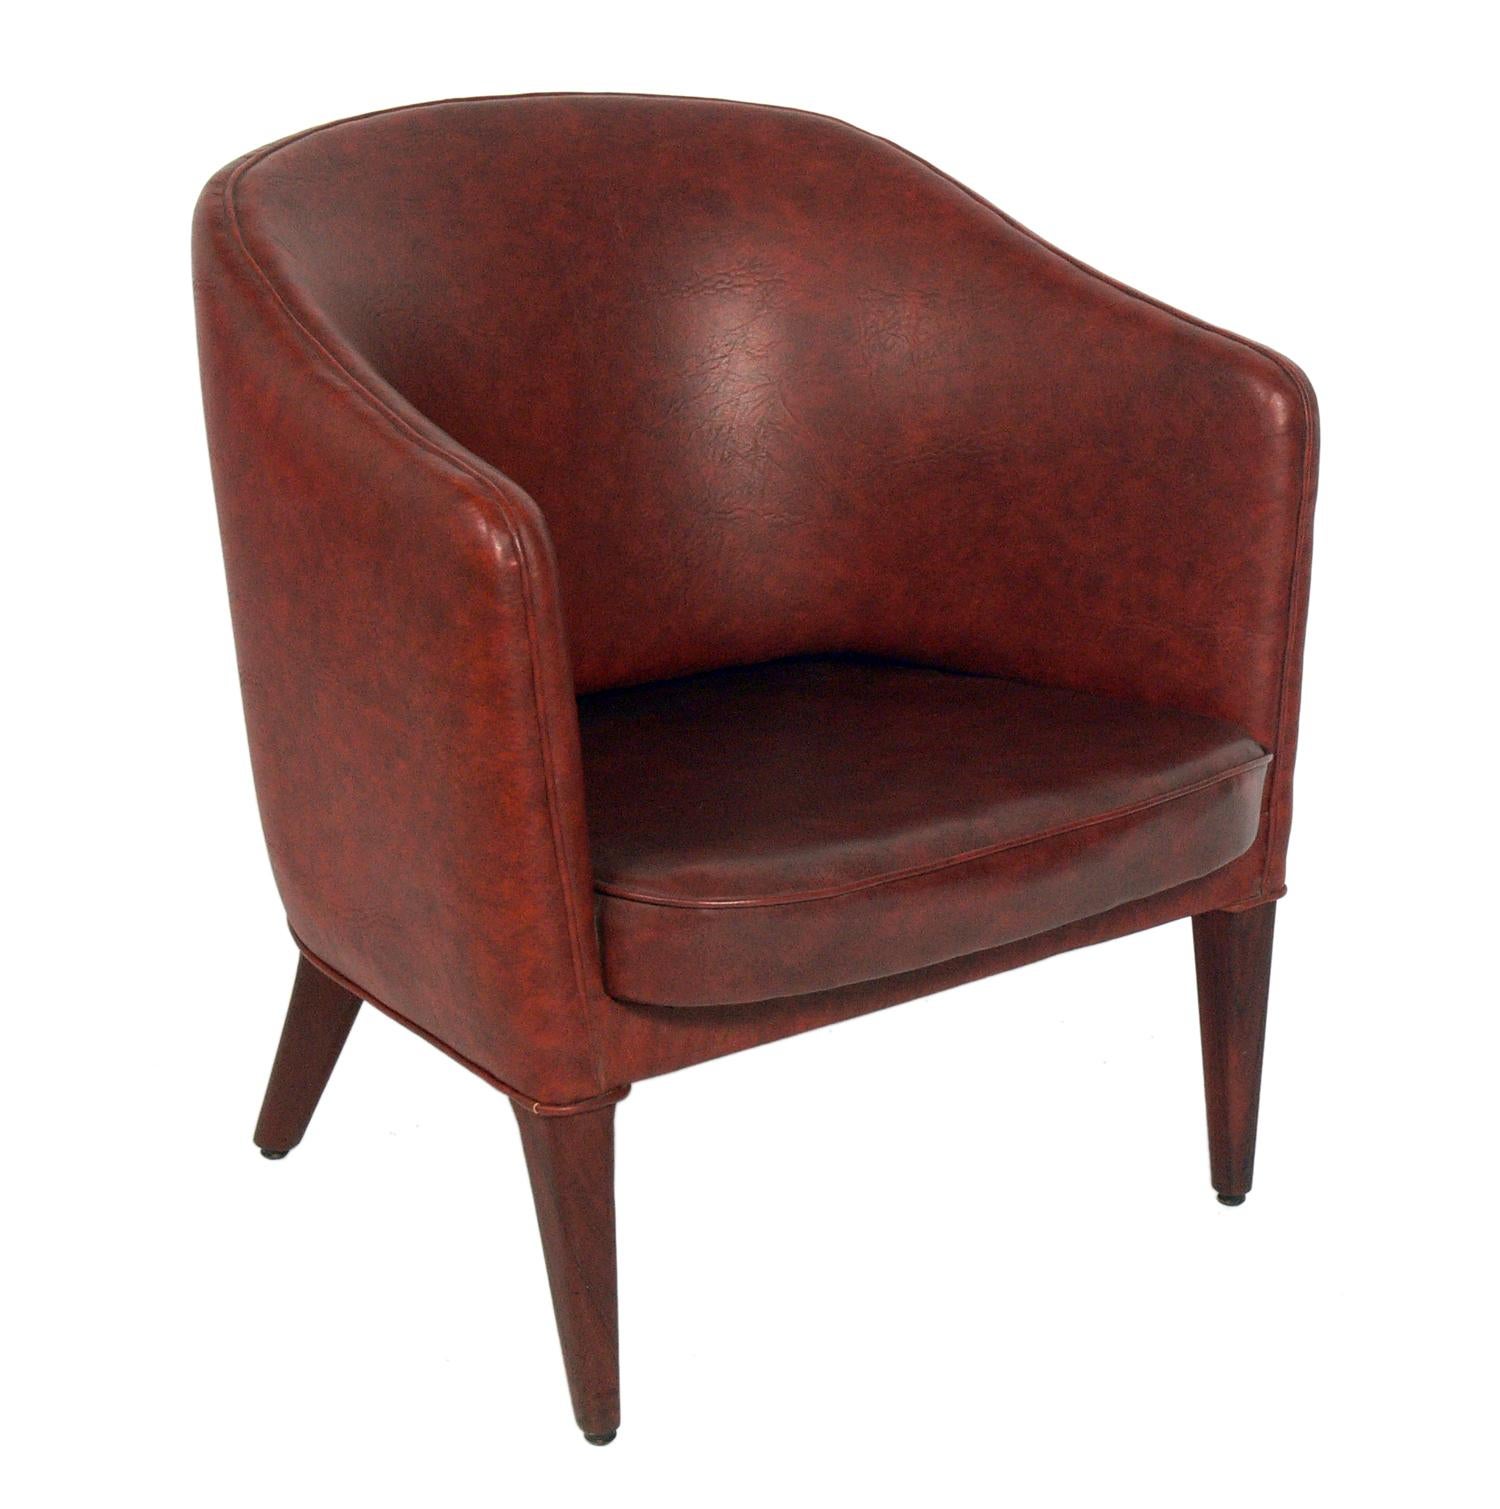 Curvaceous Danish Modern Chair